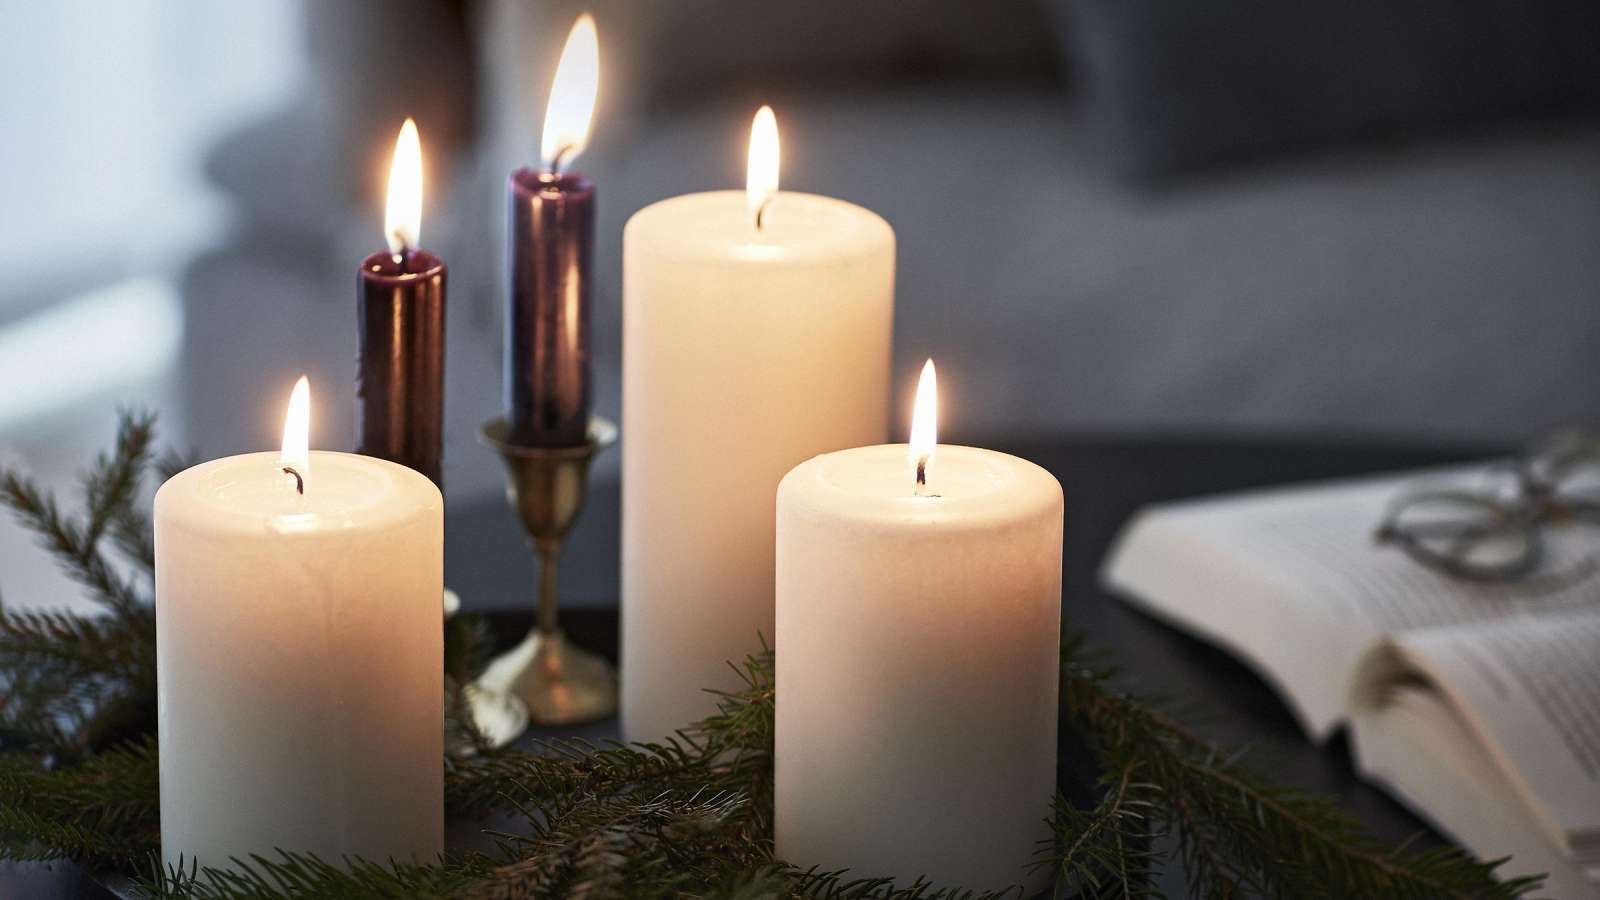 Suomalaiset ostavat eniten valkoisia kynttilöitä. Tunnelmallisessa kuvassa kolmea valkoista Havi-kynttilää.